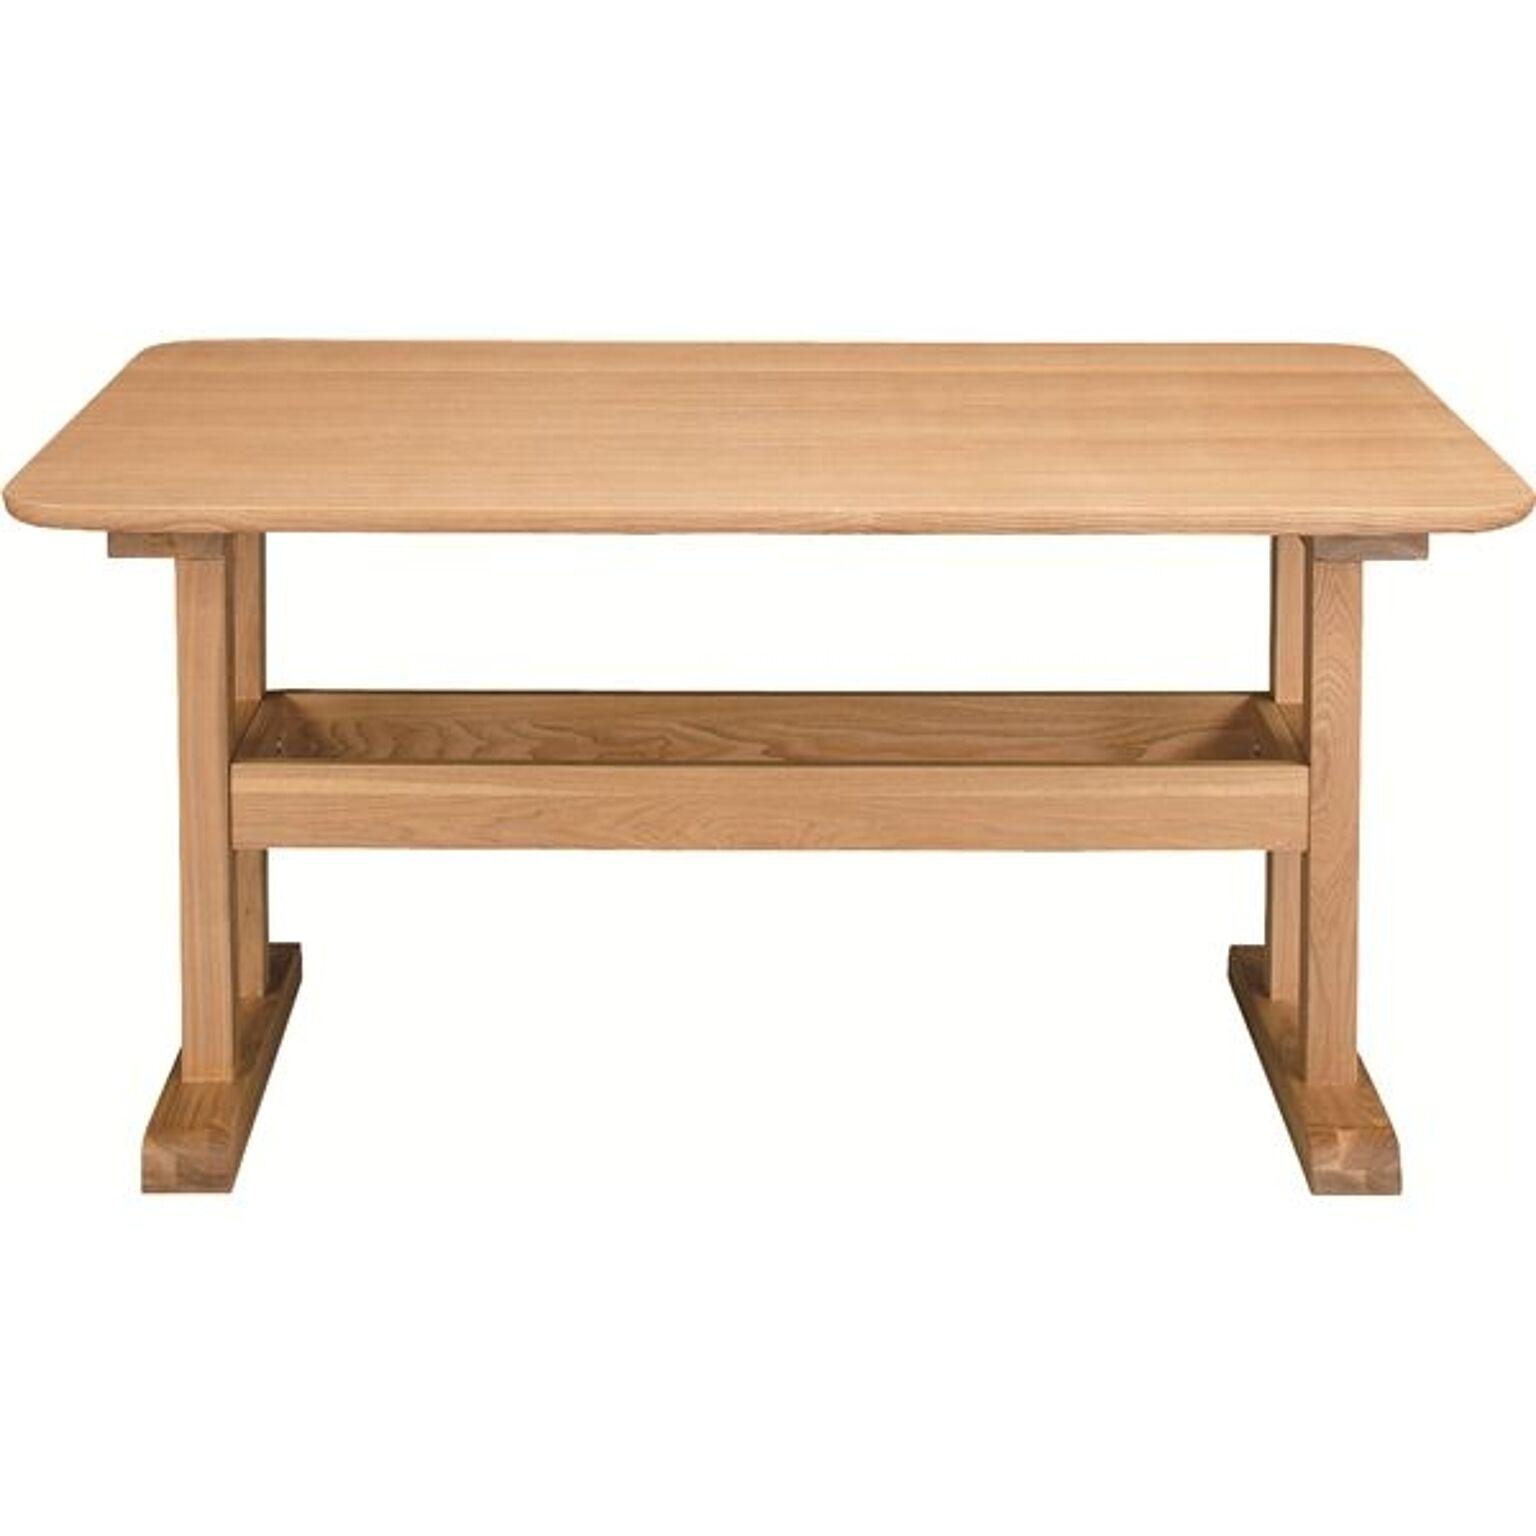 ダイニングテーブル デリカ 長方形 木製 4人掛けサイズ HOT-456NA ナチュラル